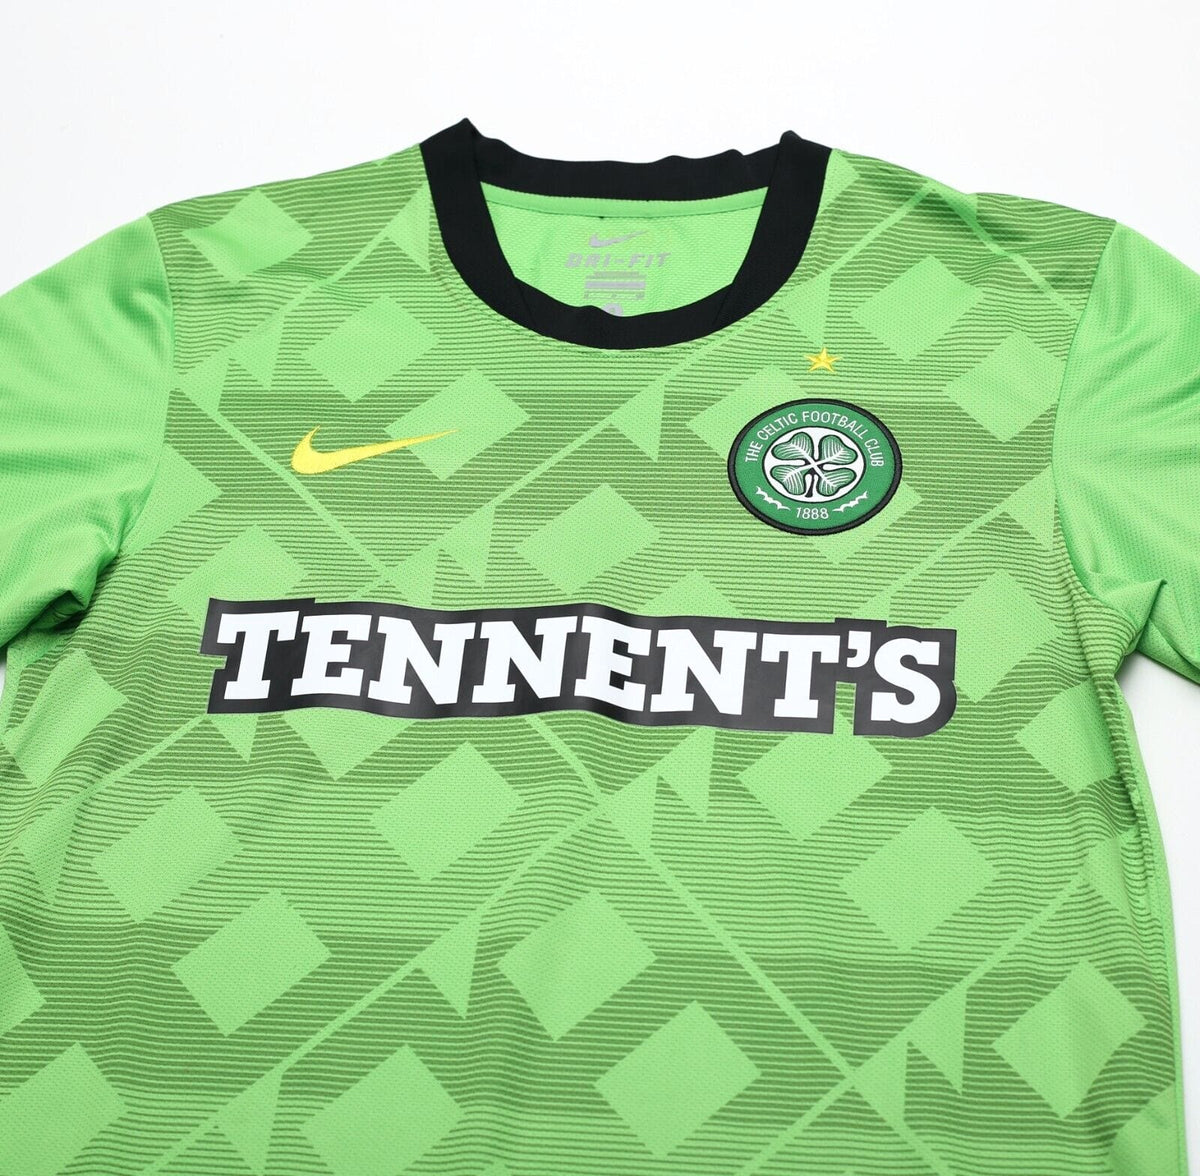 2010-11 Celtic Away L/S Shirt - Excellent 9/10 - (S)